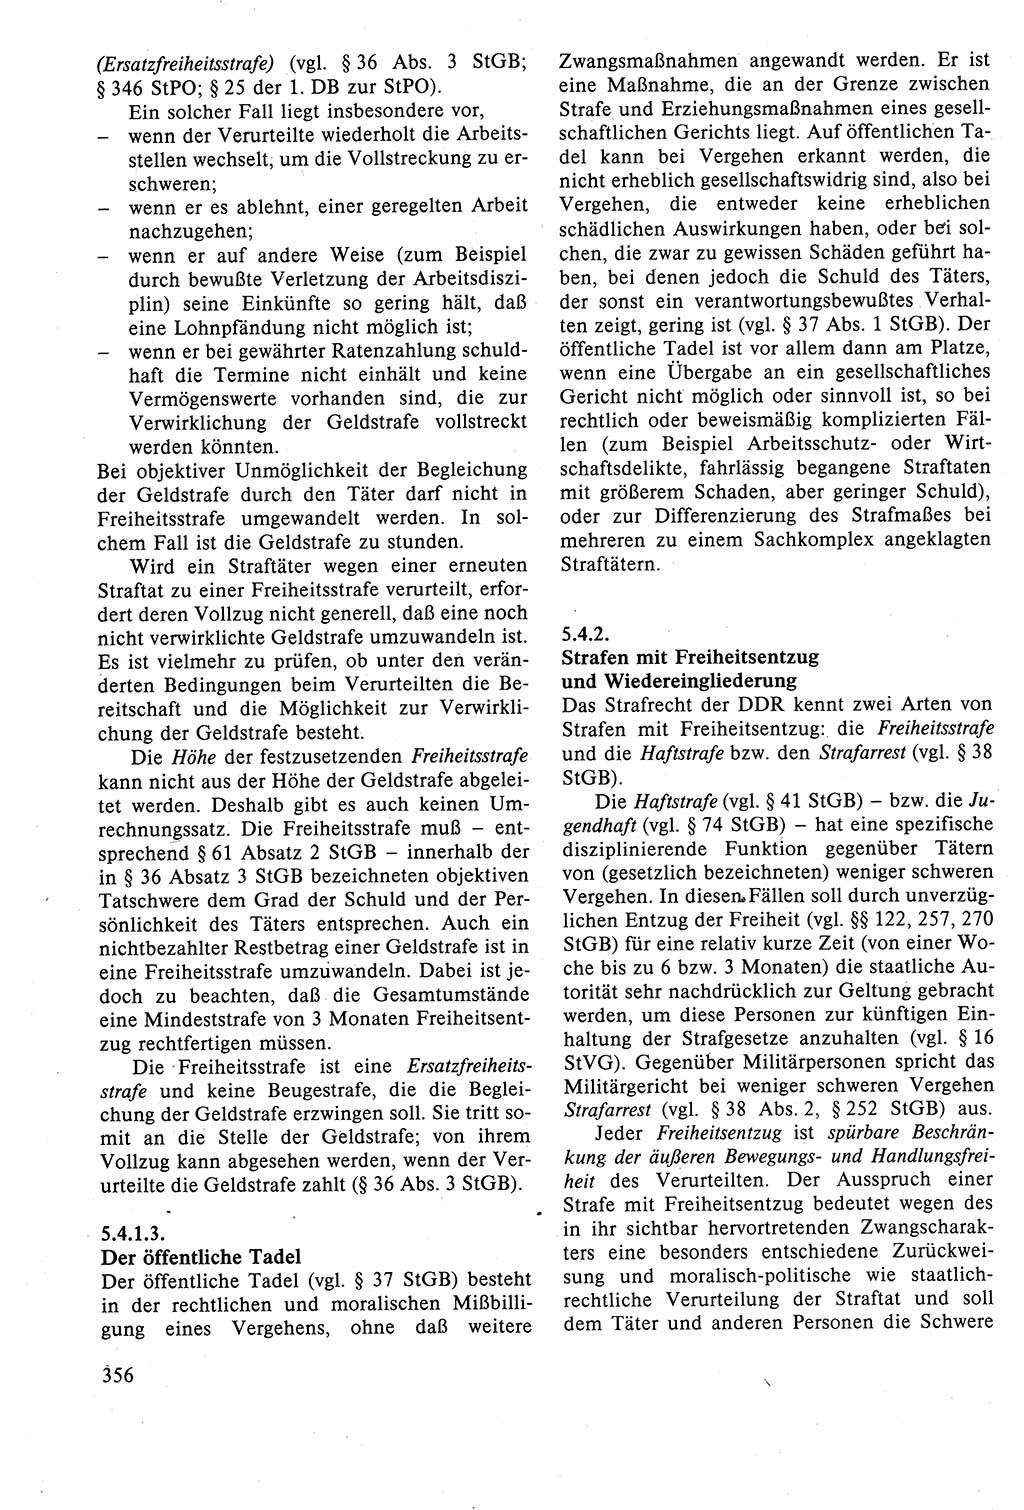 Strafrecht der DDR (Deutsche Demokratische Republik), Lehrbuch 1988, Seite 356 (Strafr. DDR Lb. 1988, S. 356)